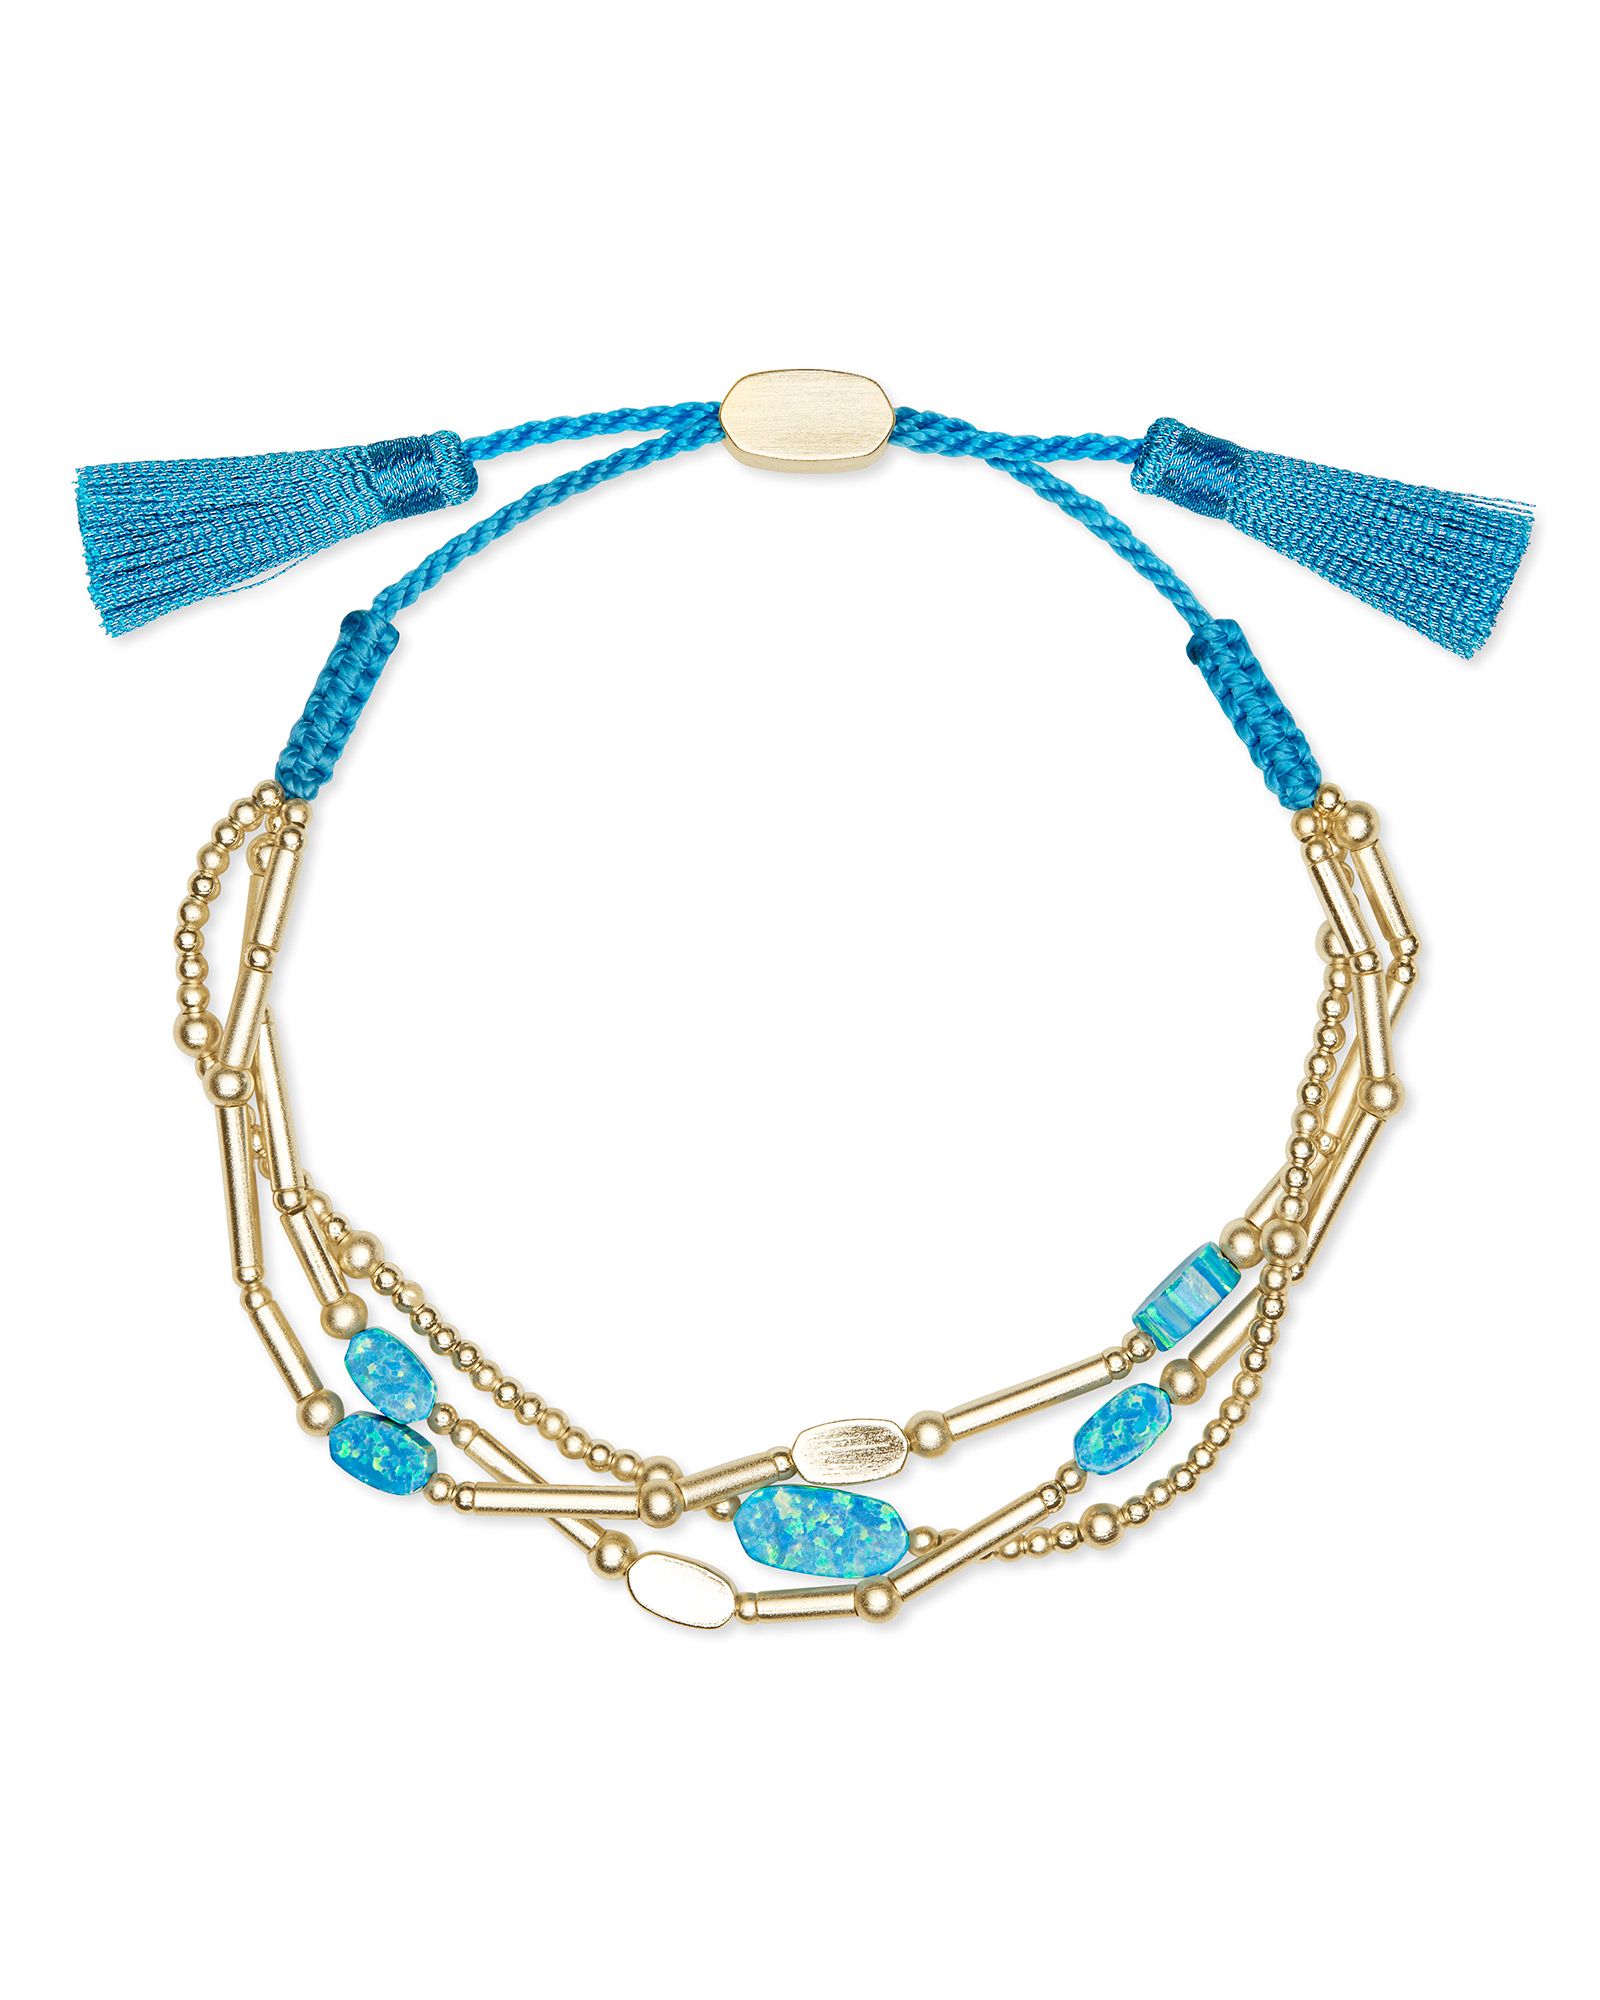 Chantal Gold Beaded Bracelet in Turquoise Kyocera Opal | Kendra Scott